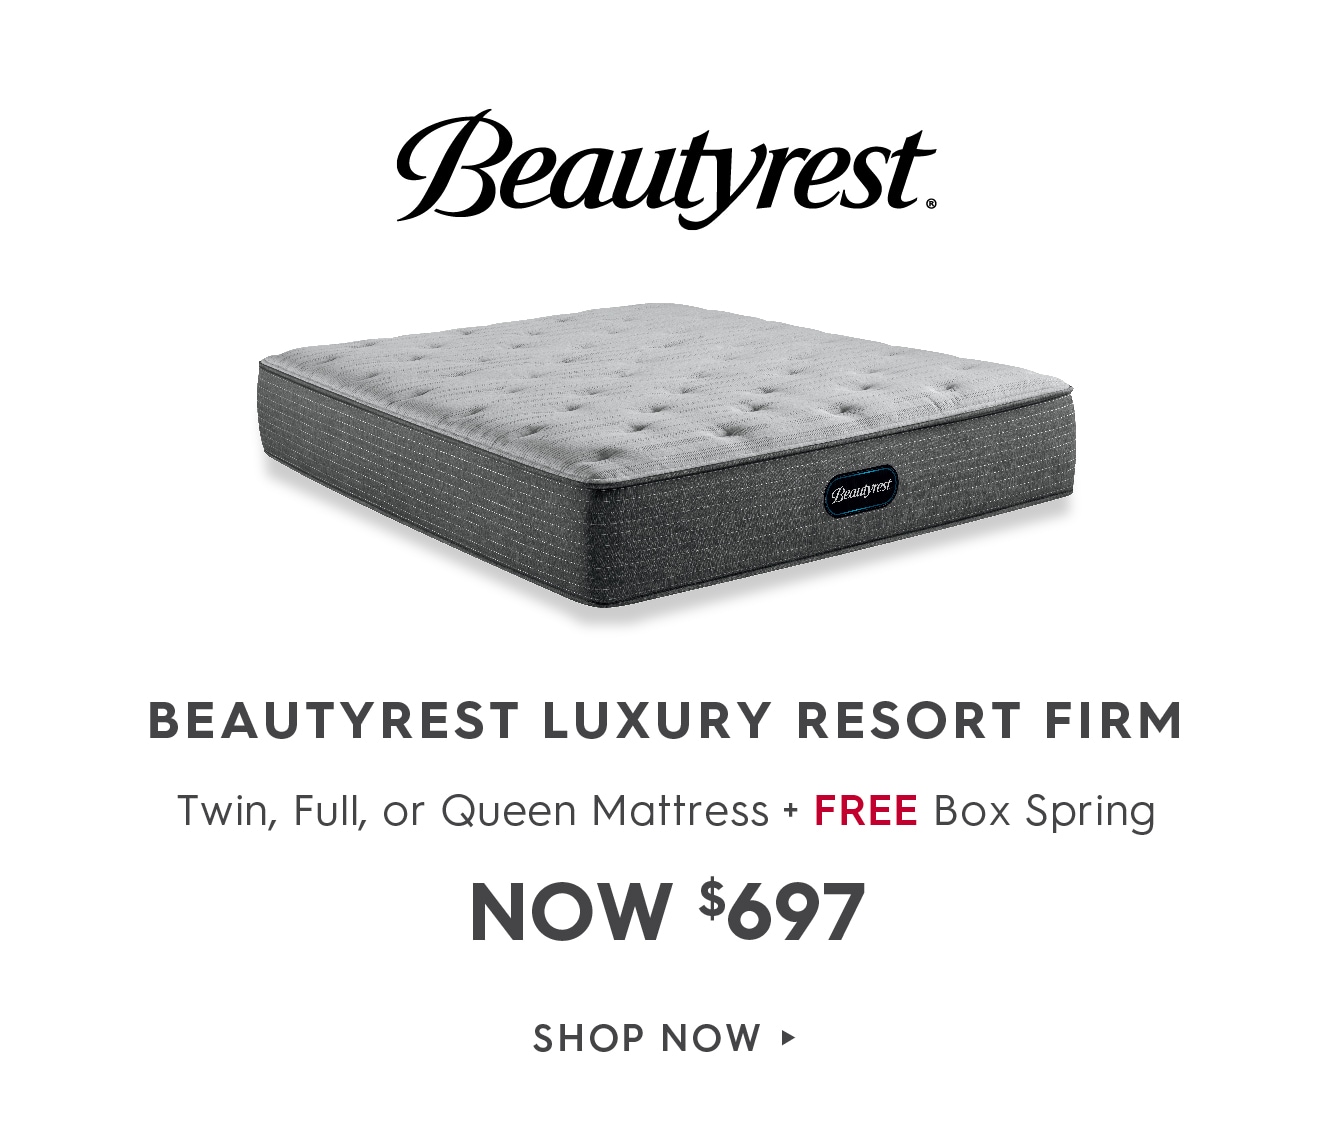 Shop the Beautyrest Luxury Resort deals.